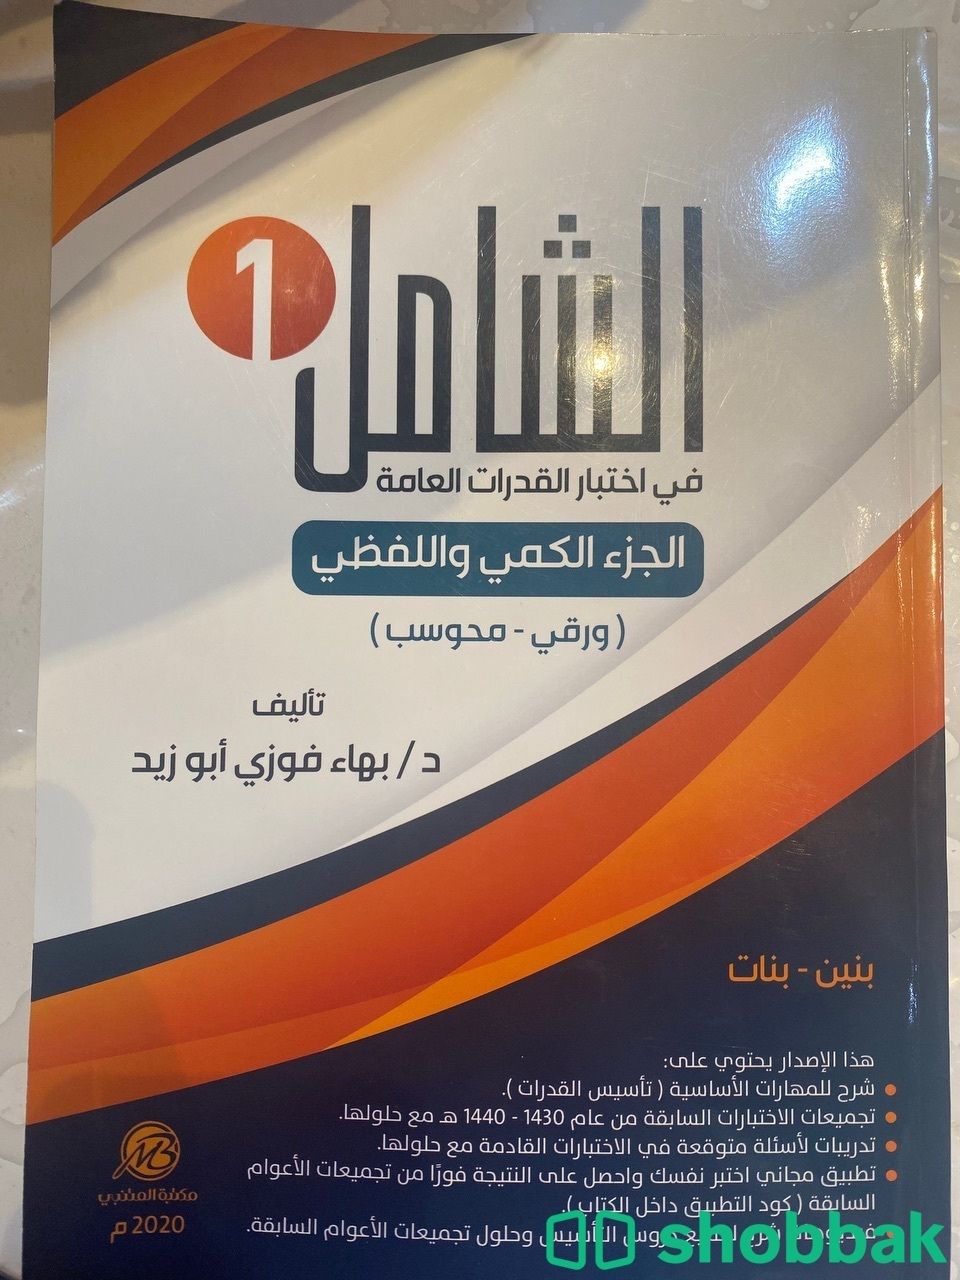 كتاب القدرات الشامل ، احدث التجميعات في القدرات العامة  Shobbak Saudi Arabia